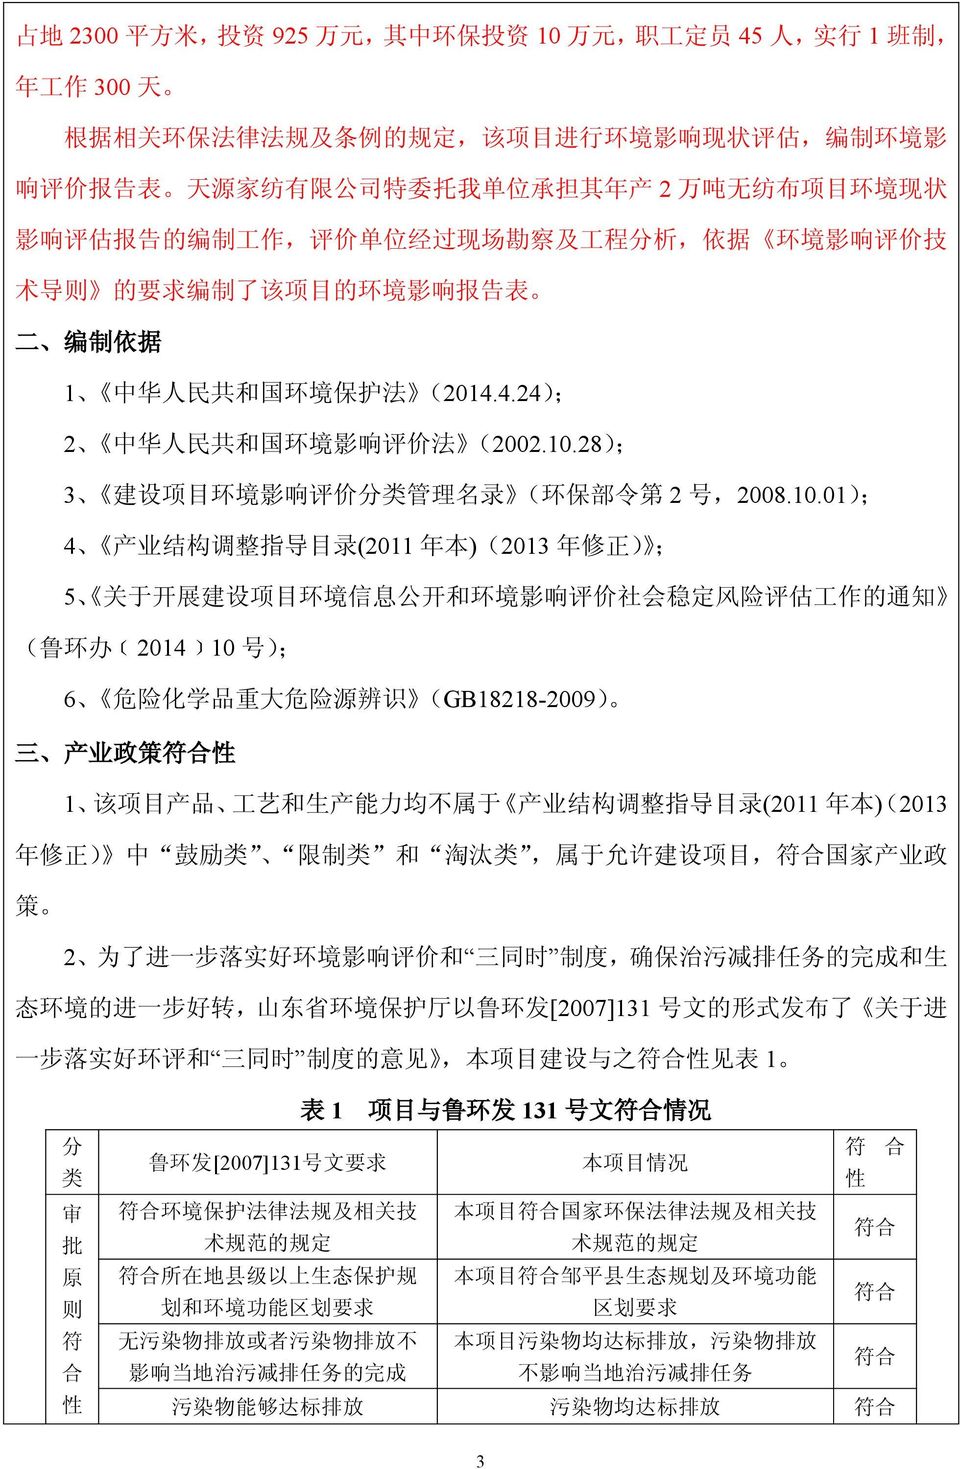 4.24); 2 中 华 人 民 共 和 国 环 境 影 响 评 价 法 (2002.10.